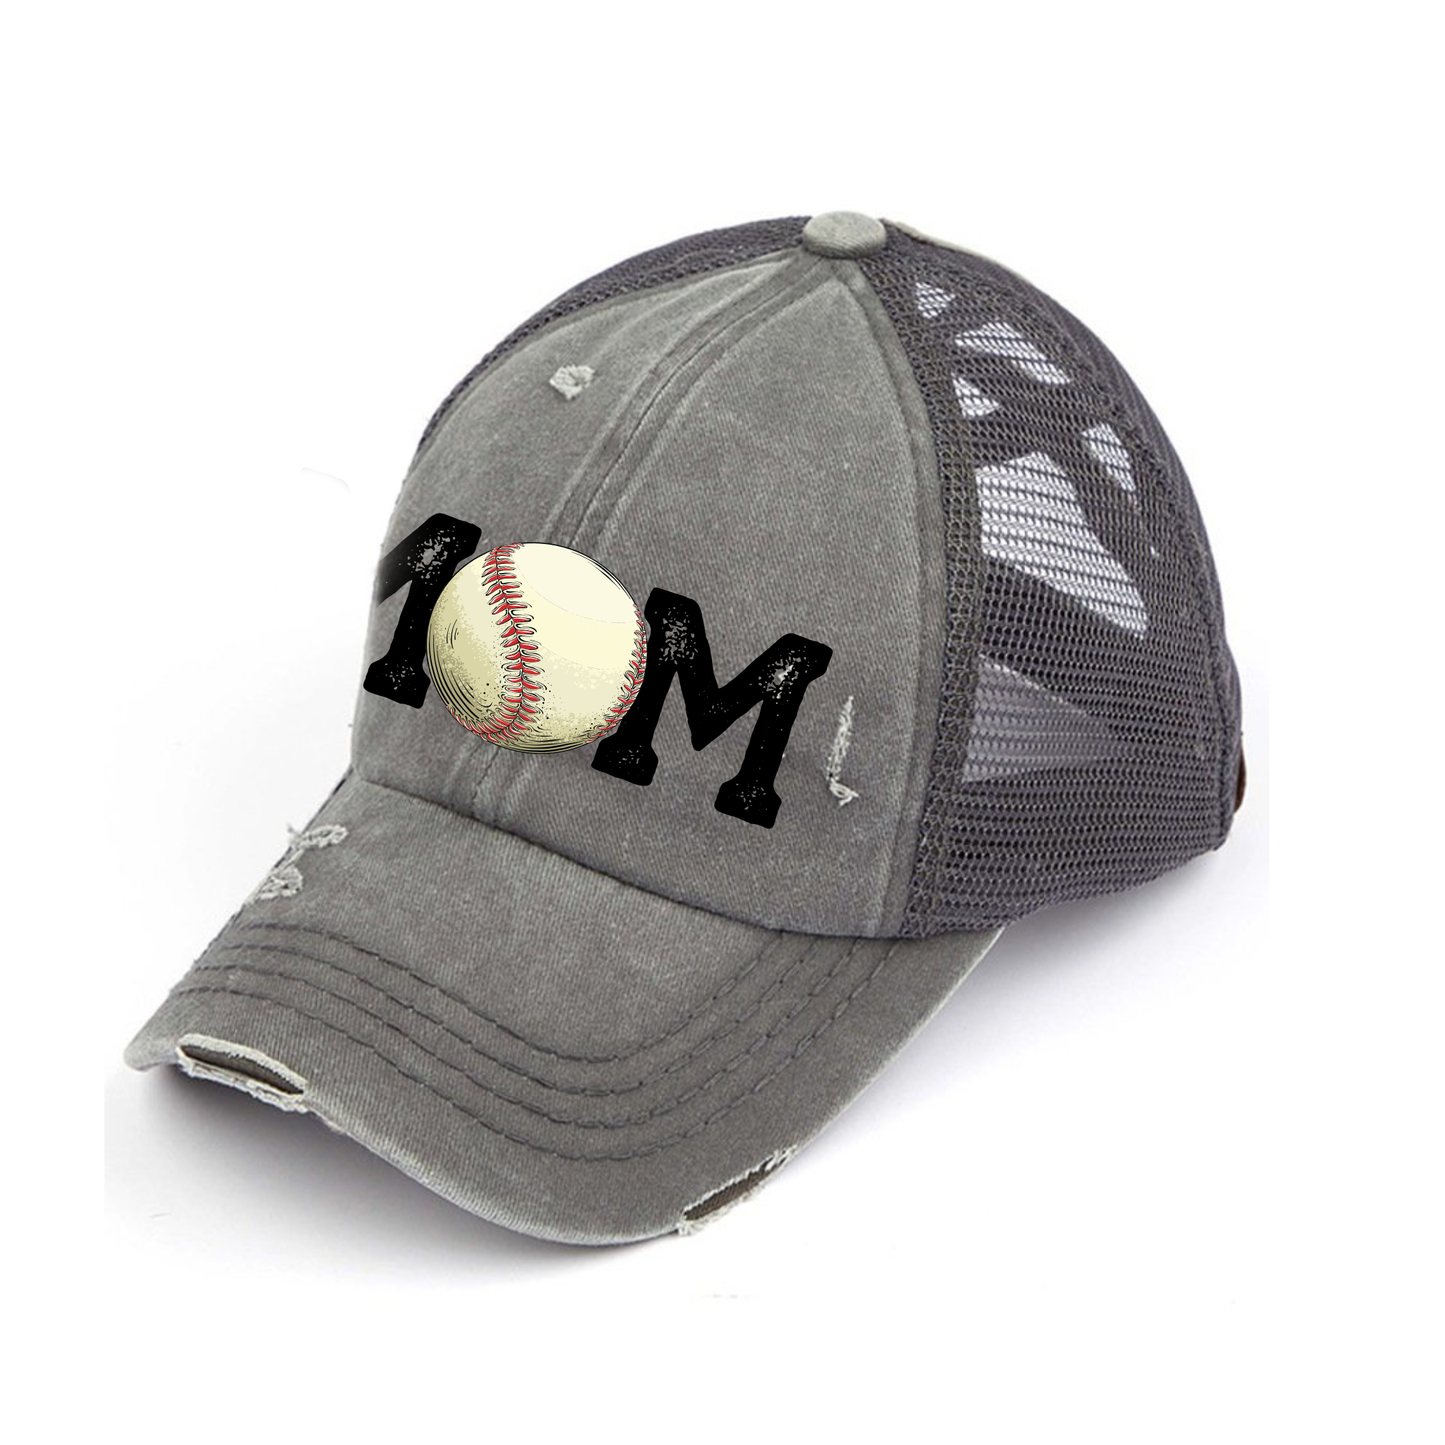 Baseball Mom Criss Cross Hat - Red, Mint & Charcoal